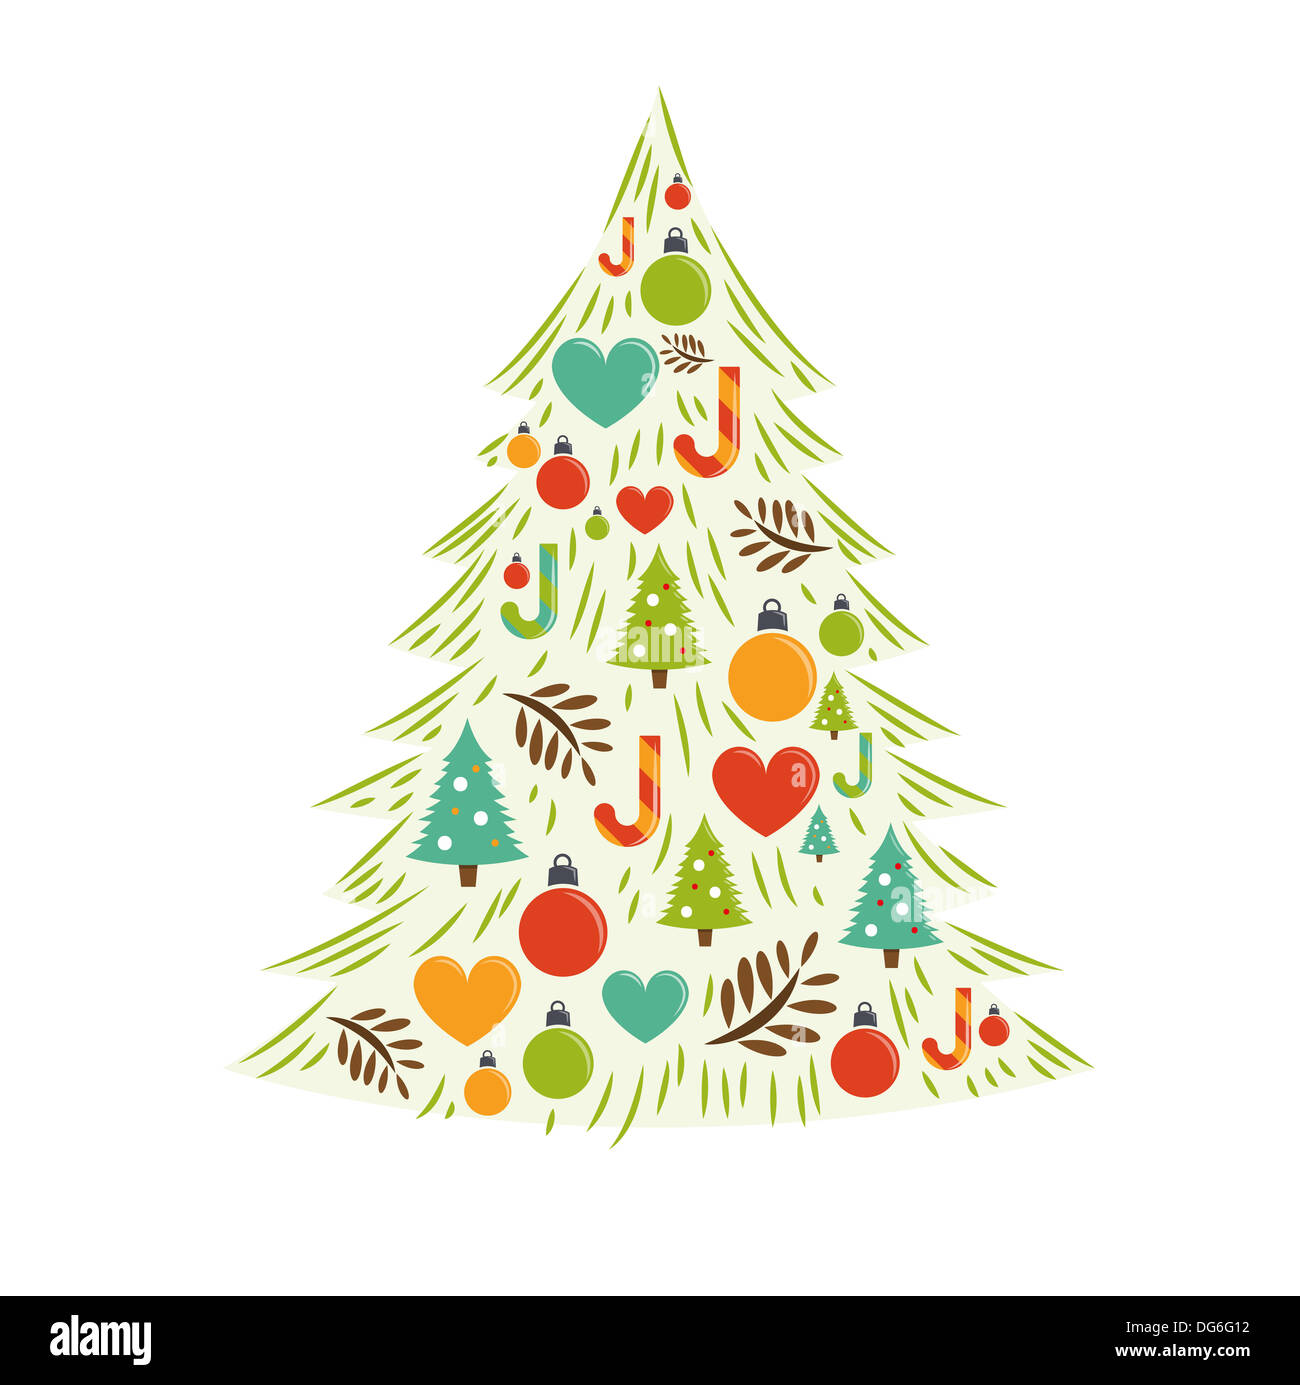 Weihnachtsbaum Karte Vektor. Vektor-illustration Stockfoto